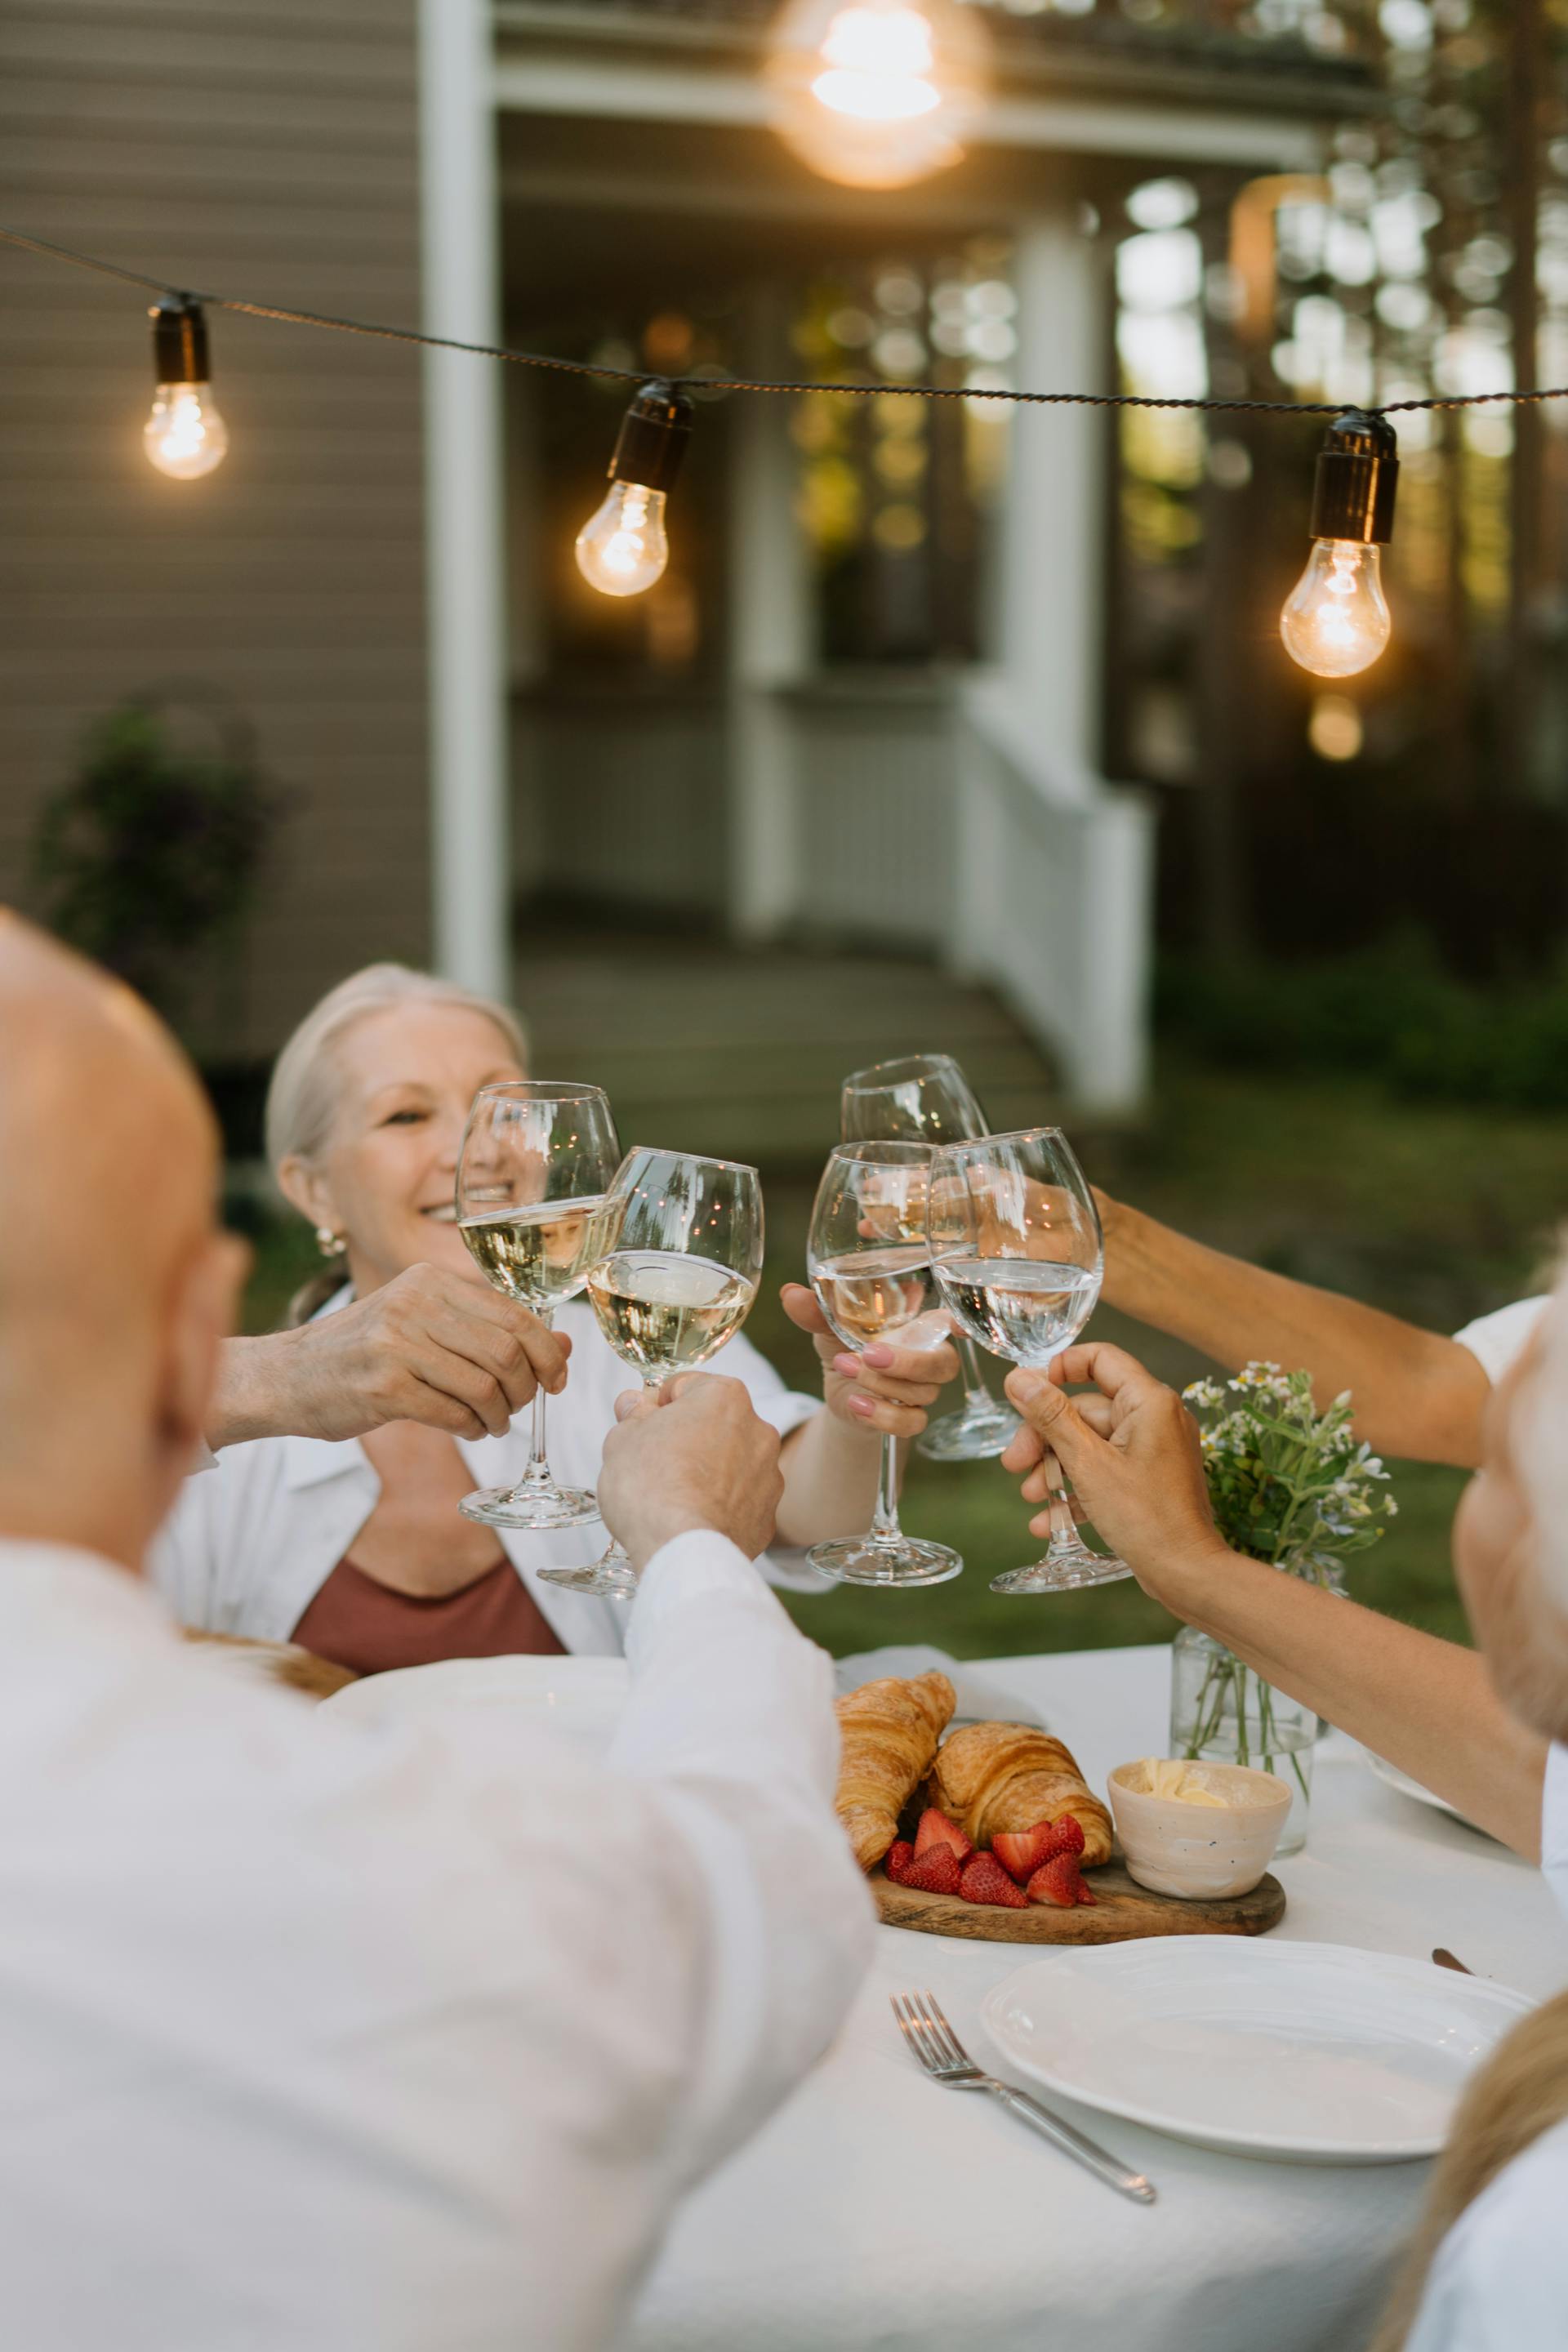 Les membres de la famille lèvent leur verre pendant le dîner | Source : Pexels